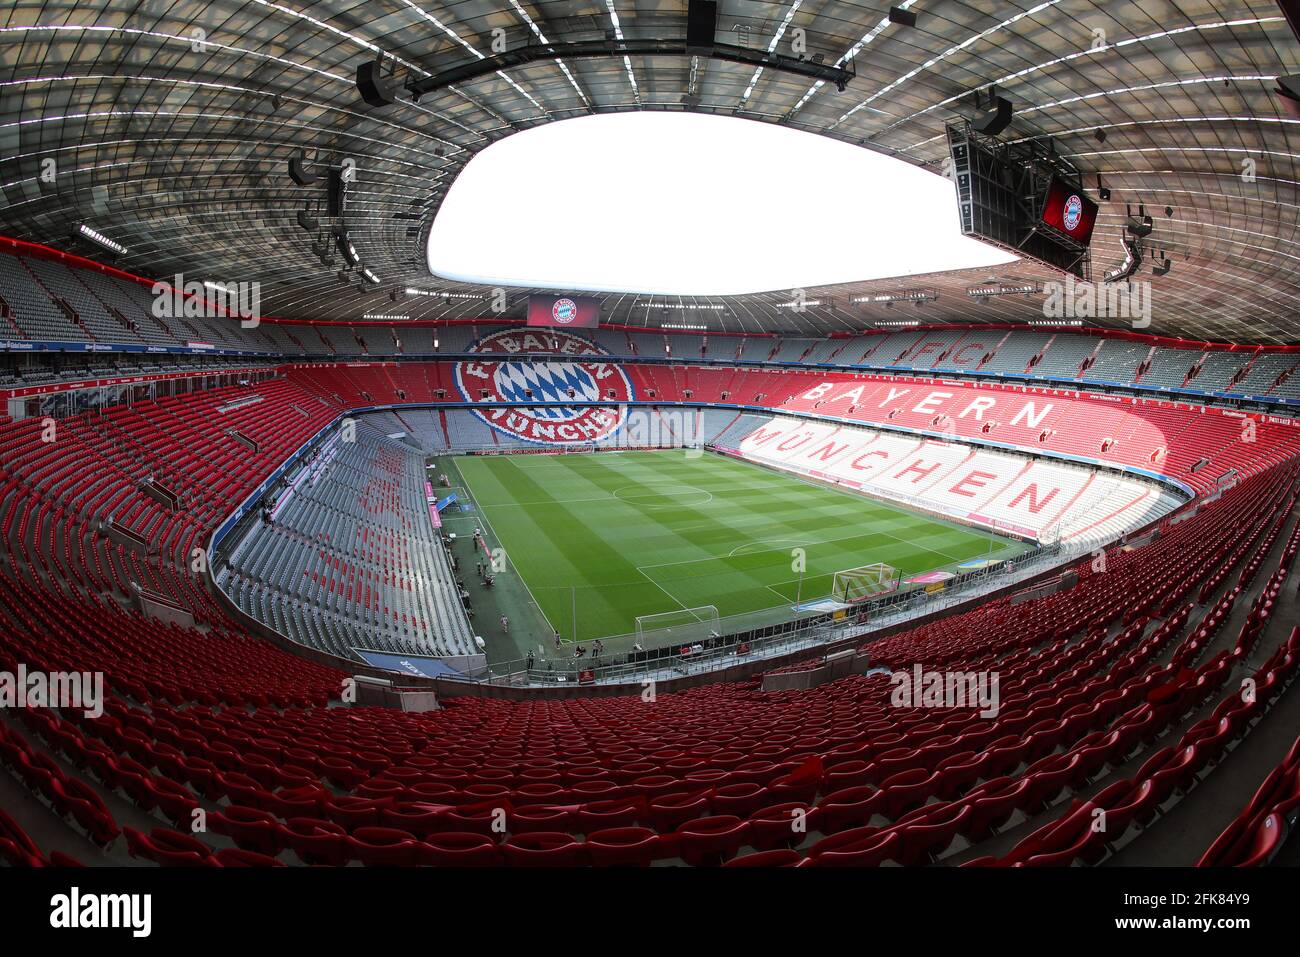 Stadion Allianz Arena in München Froettmaning für die UEFA Euro 2020 / 2021 Fußball Europameisterschaft Fußballstadion vom FC Bayern München © diebilderwelt / Alamy Stock Stockfoto